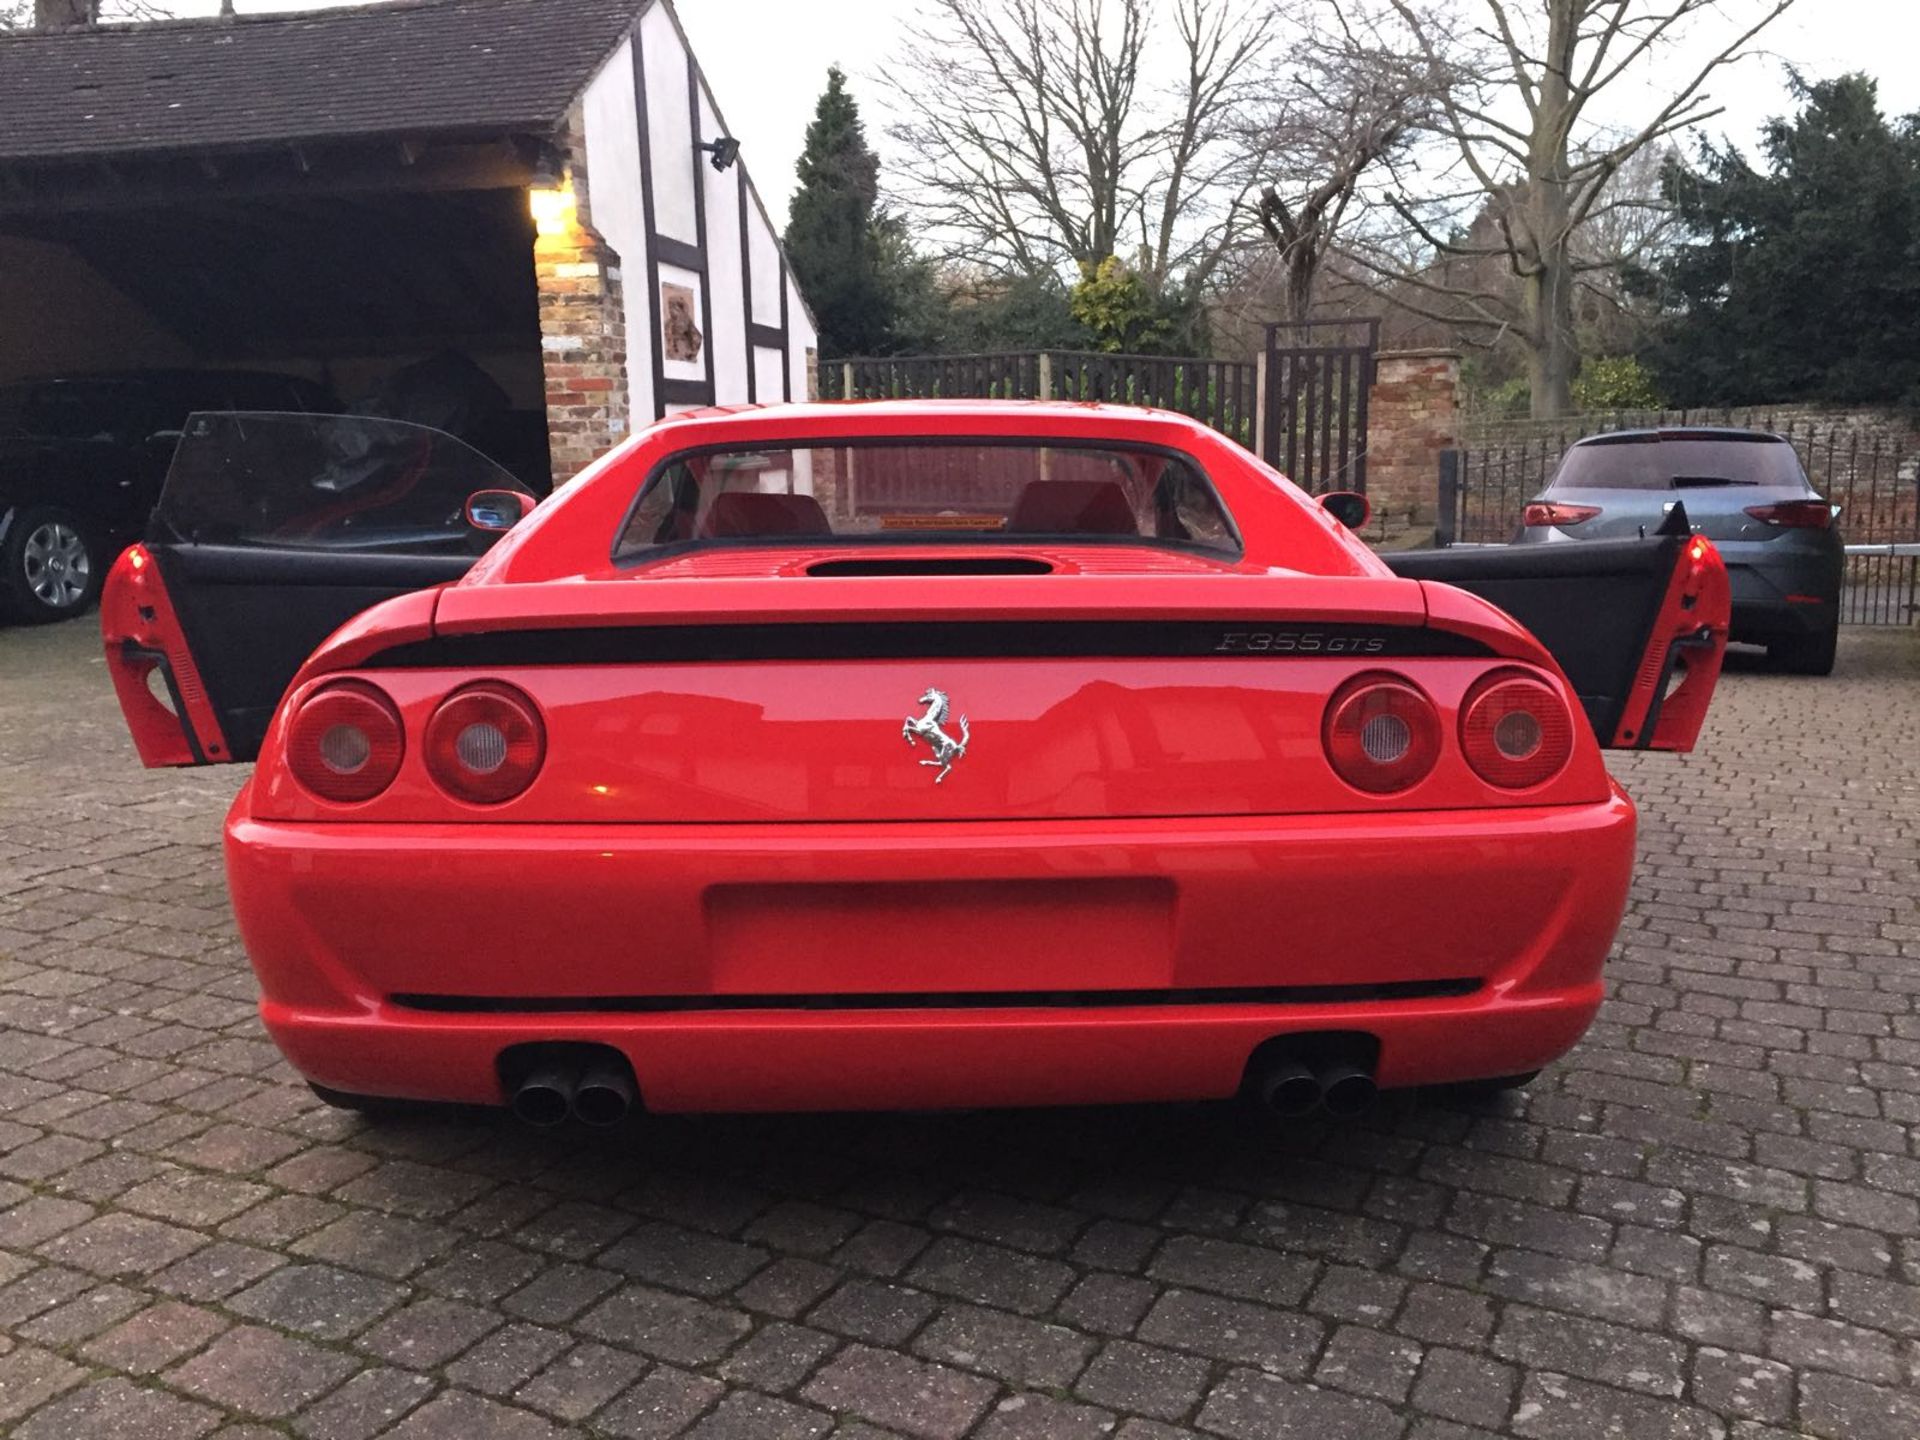 RHD 1996 Ferrari 355 GTS (Rare Manual Targa) - Image 8 of 40